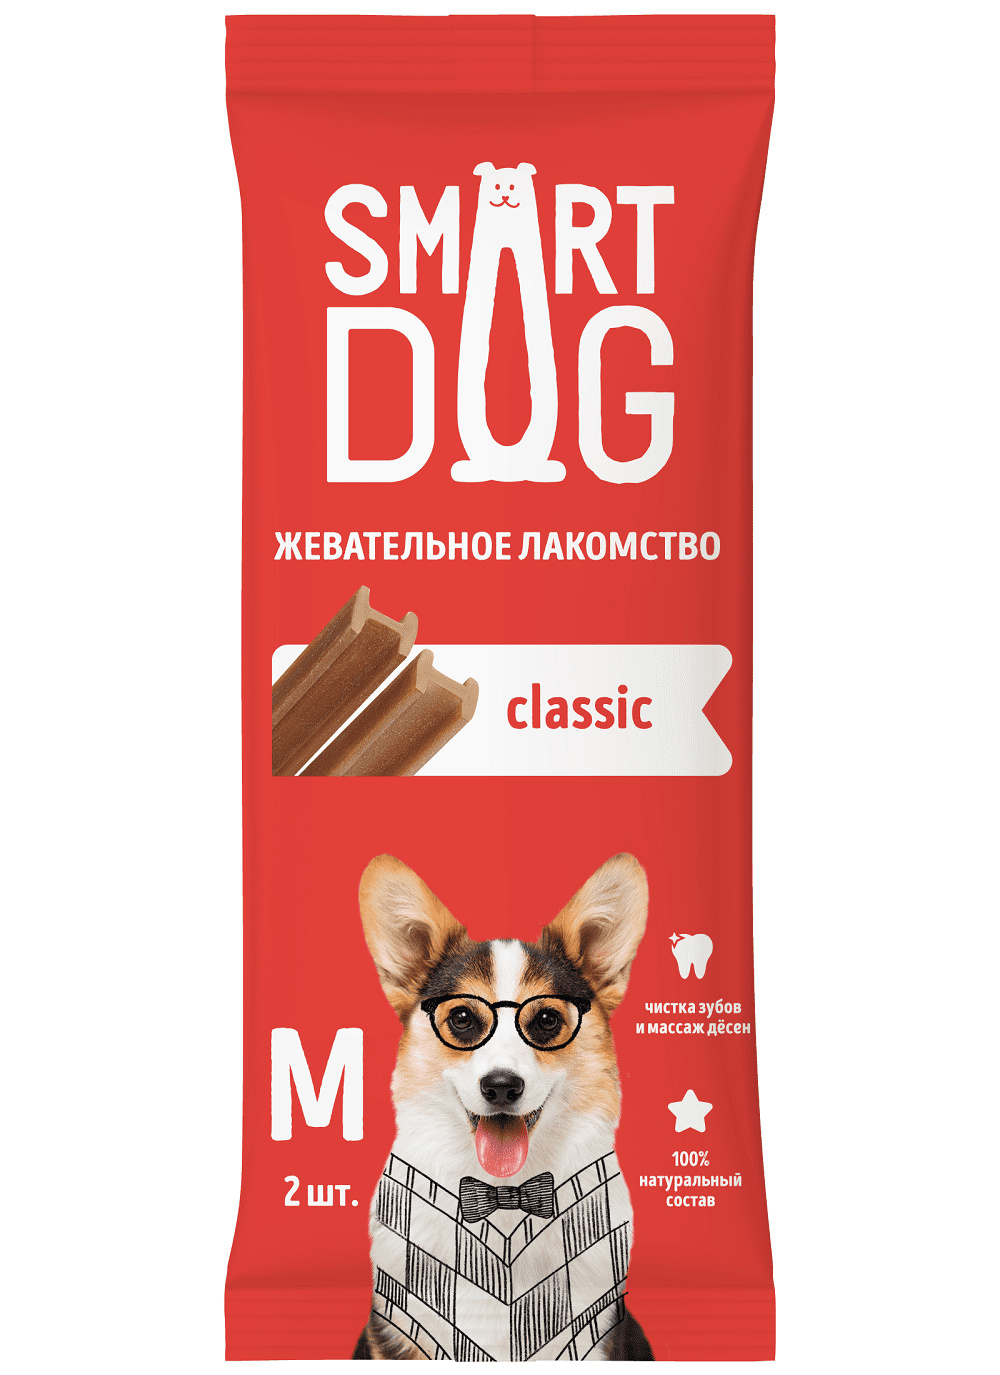 Smart Dog лакомства Smart Dog лакомства жевательное лакомство с витаминами и минералами для собак и щенков (L) smart dog лакомства smart dog лакомства жевательное лакомство с витаминами и минералами для собак и щенков l